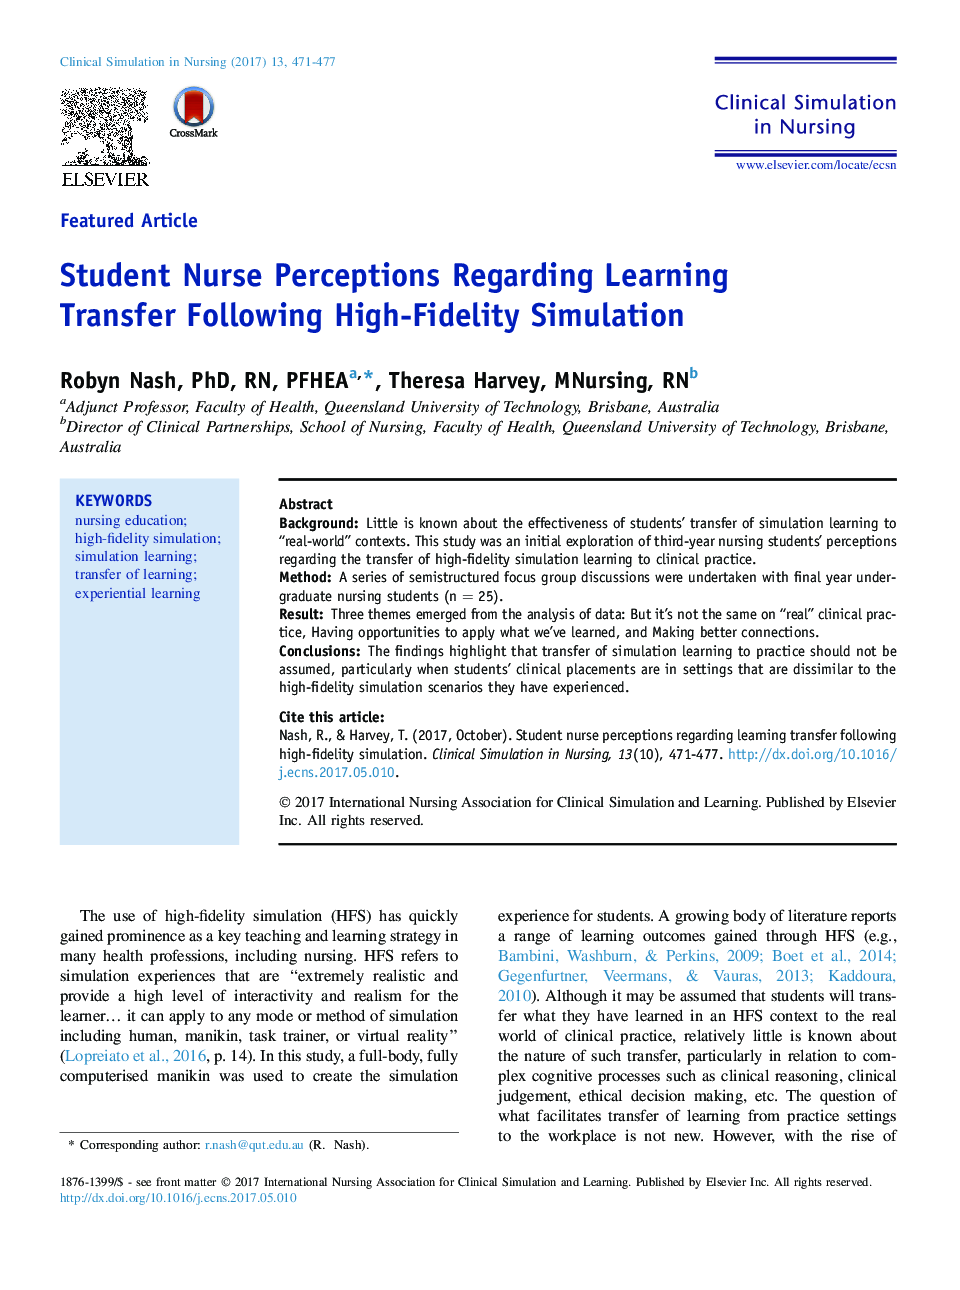 ادراک پرستار دانشجو در مورد انتقال یادگیری با استفاده از شبیه سازی بسیار بالا 